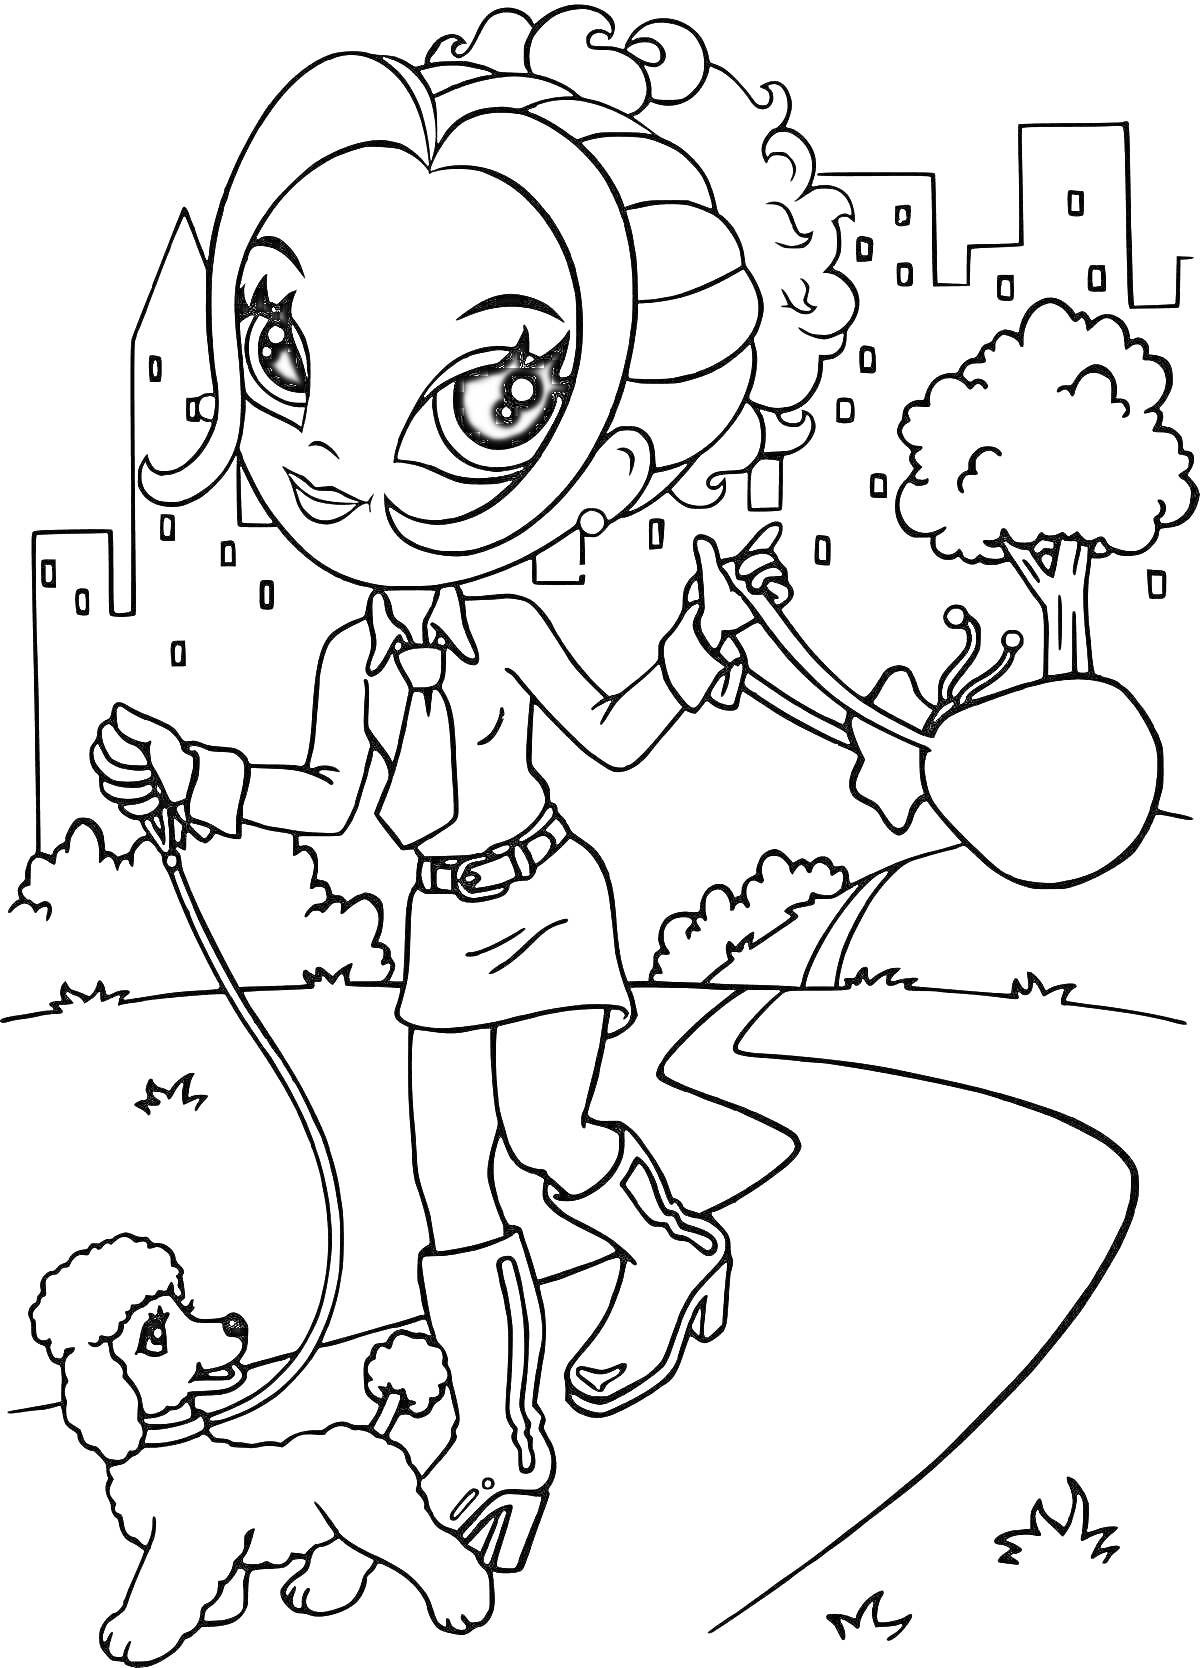 Раскраска Девочка с собачкой на прогулке в парке (городской фон, деревья, лужайка)